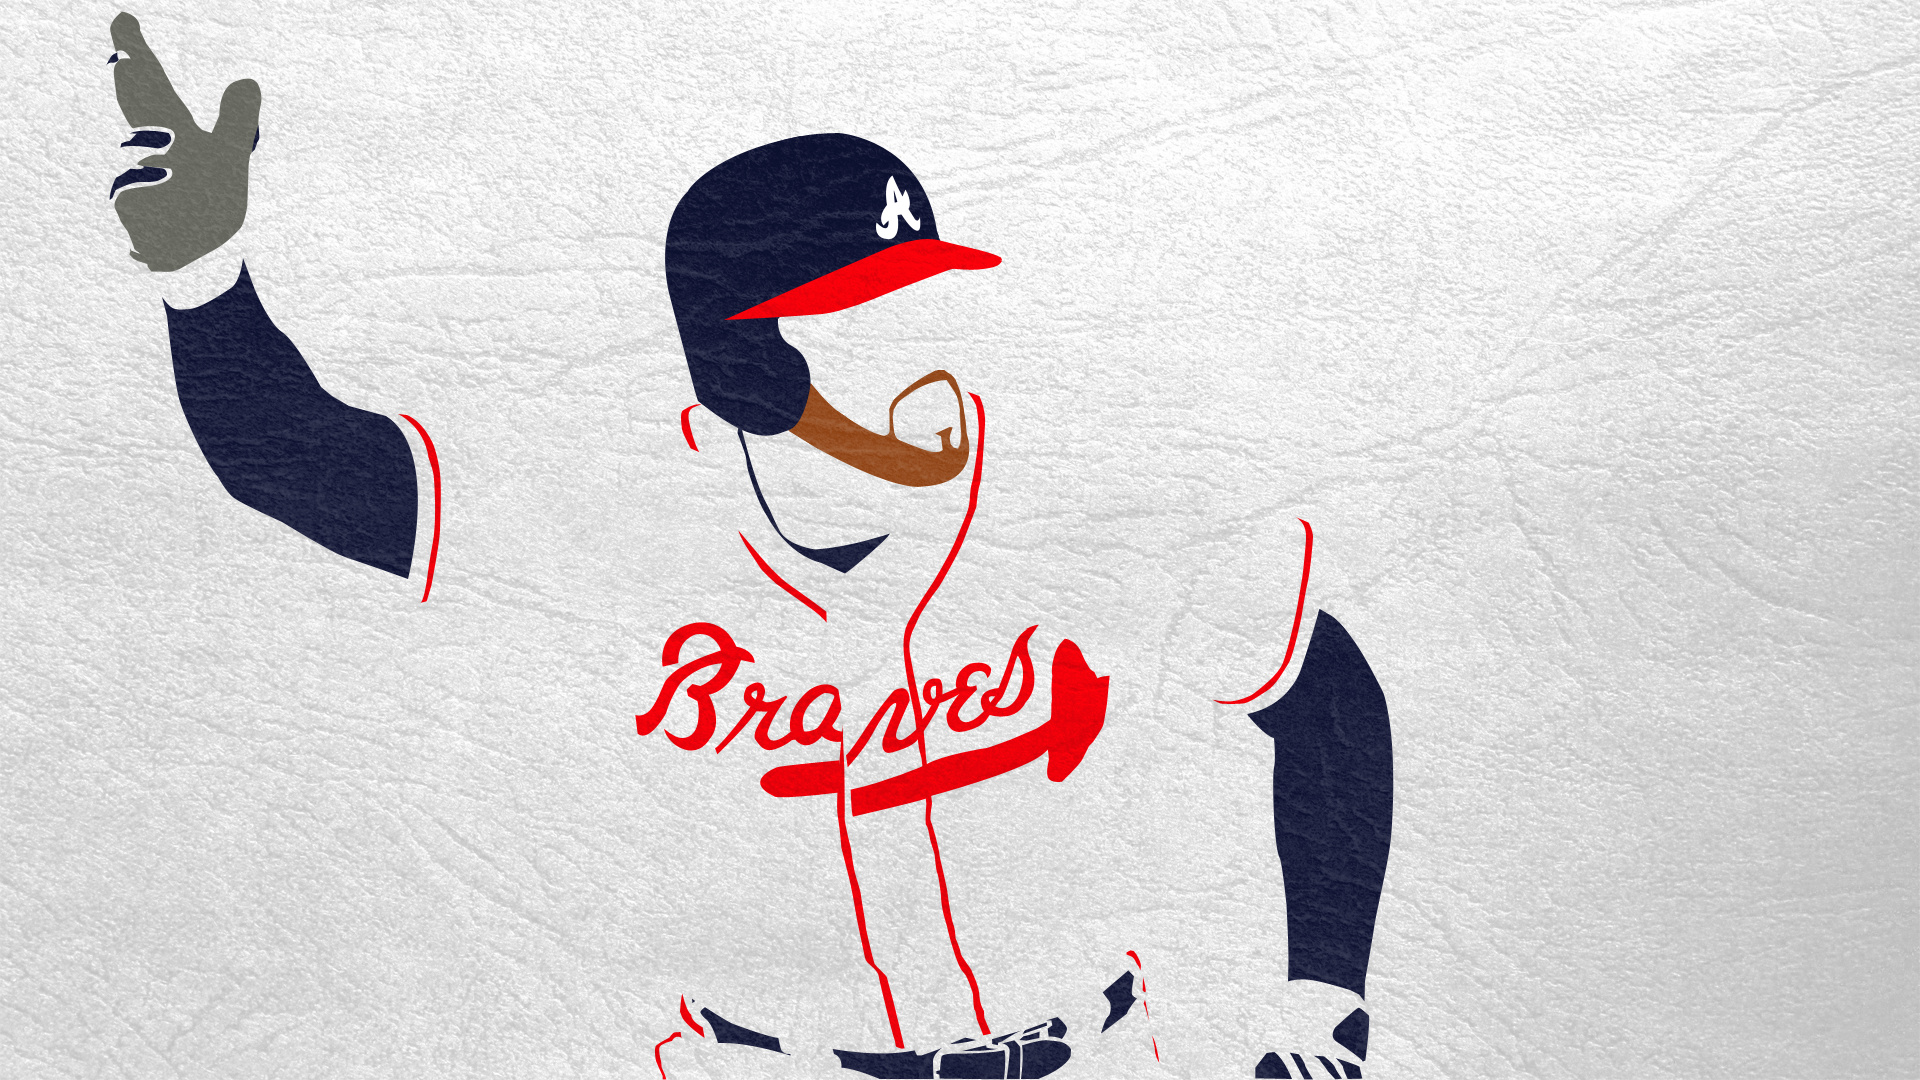 Atlanta Braves, Background images, Team spirit, Baseball fans, 1920x1080 Full HD Desktop